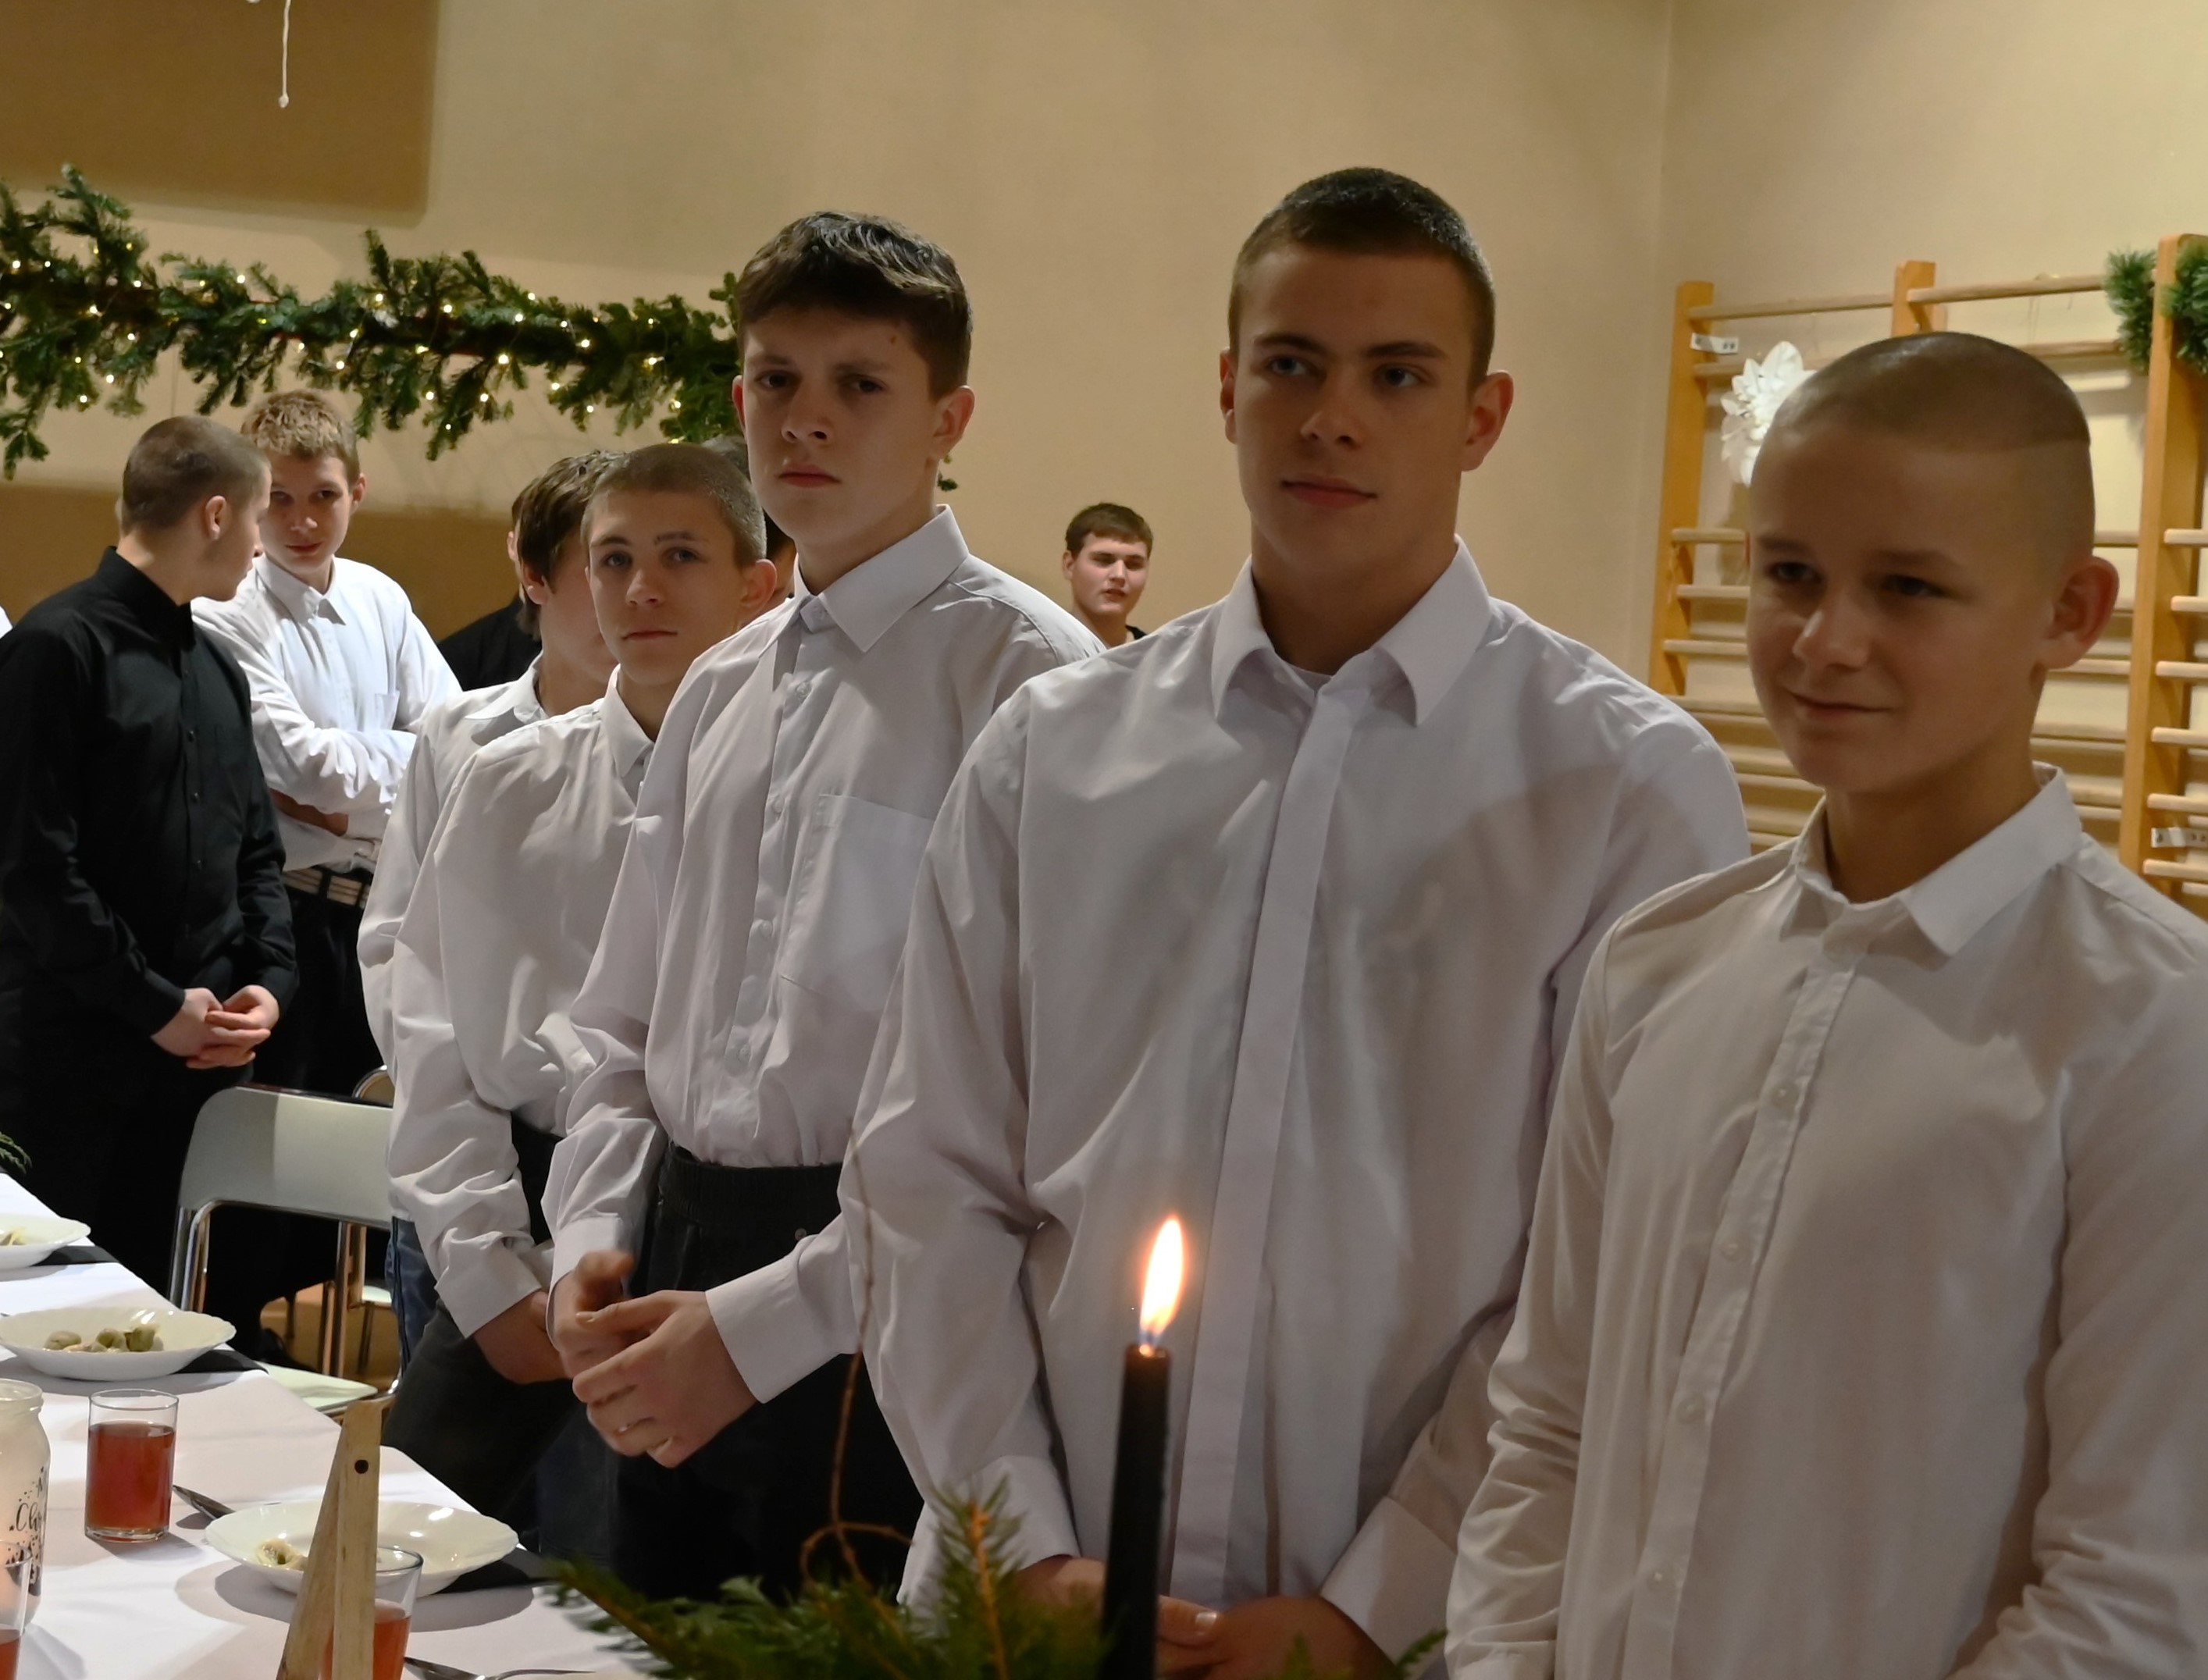 Wigilia w Ośrodku | Kilku chłopców w białych koszulach stoją rzędem za nakrytym do kolacji wigilijnej stołem.JPG